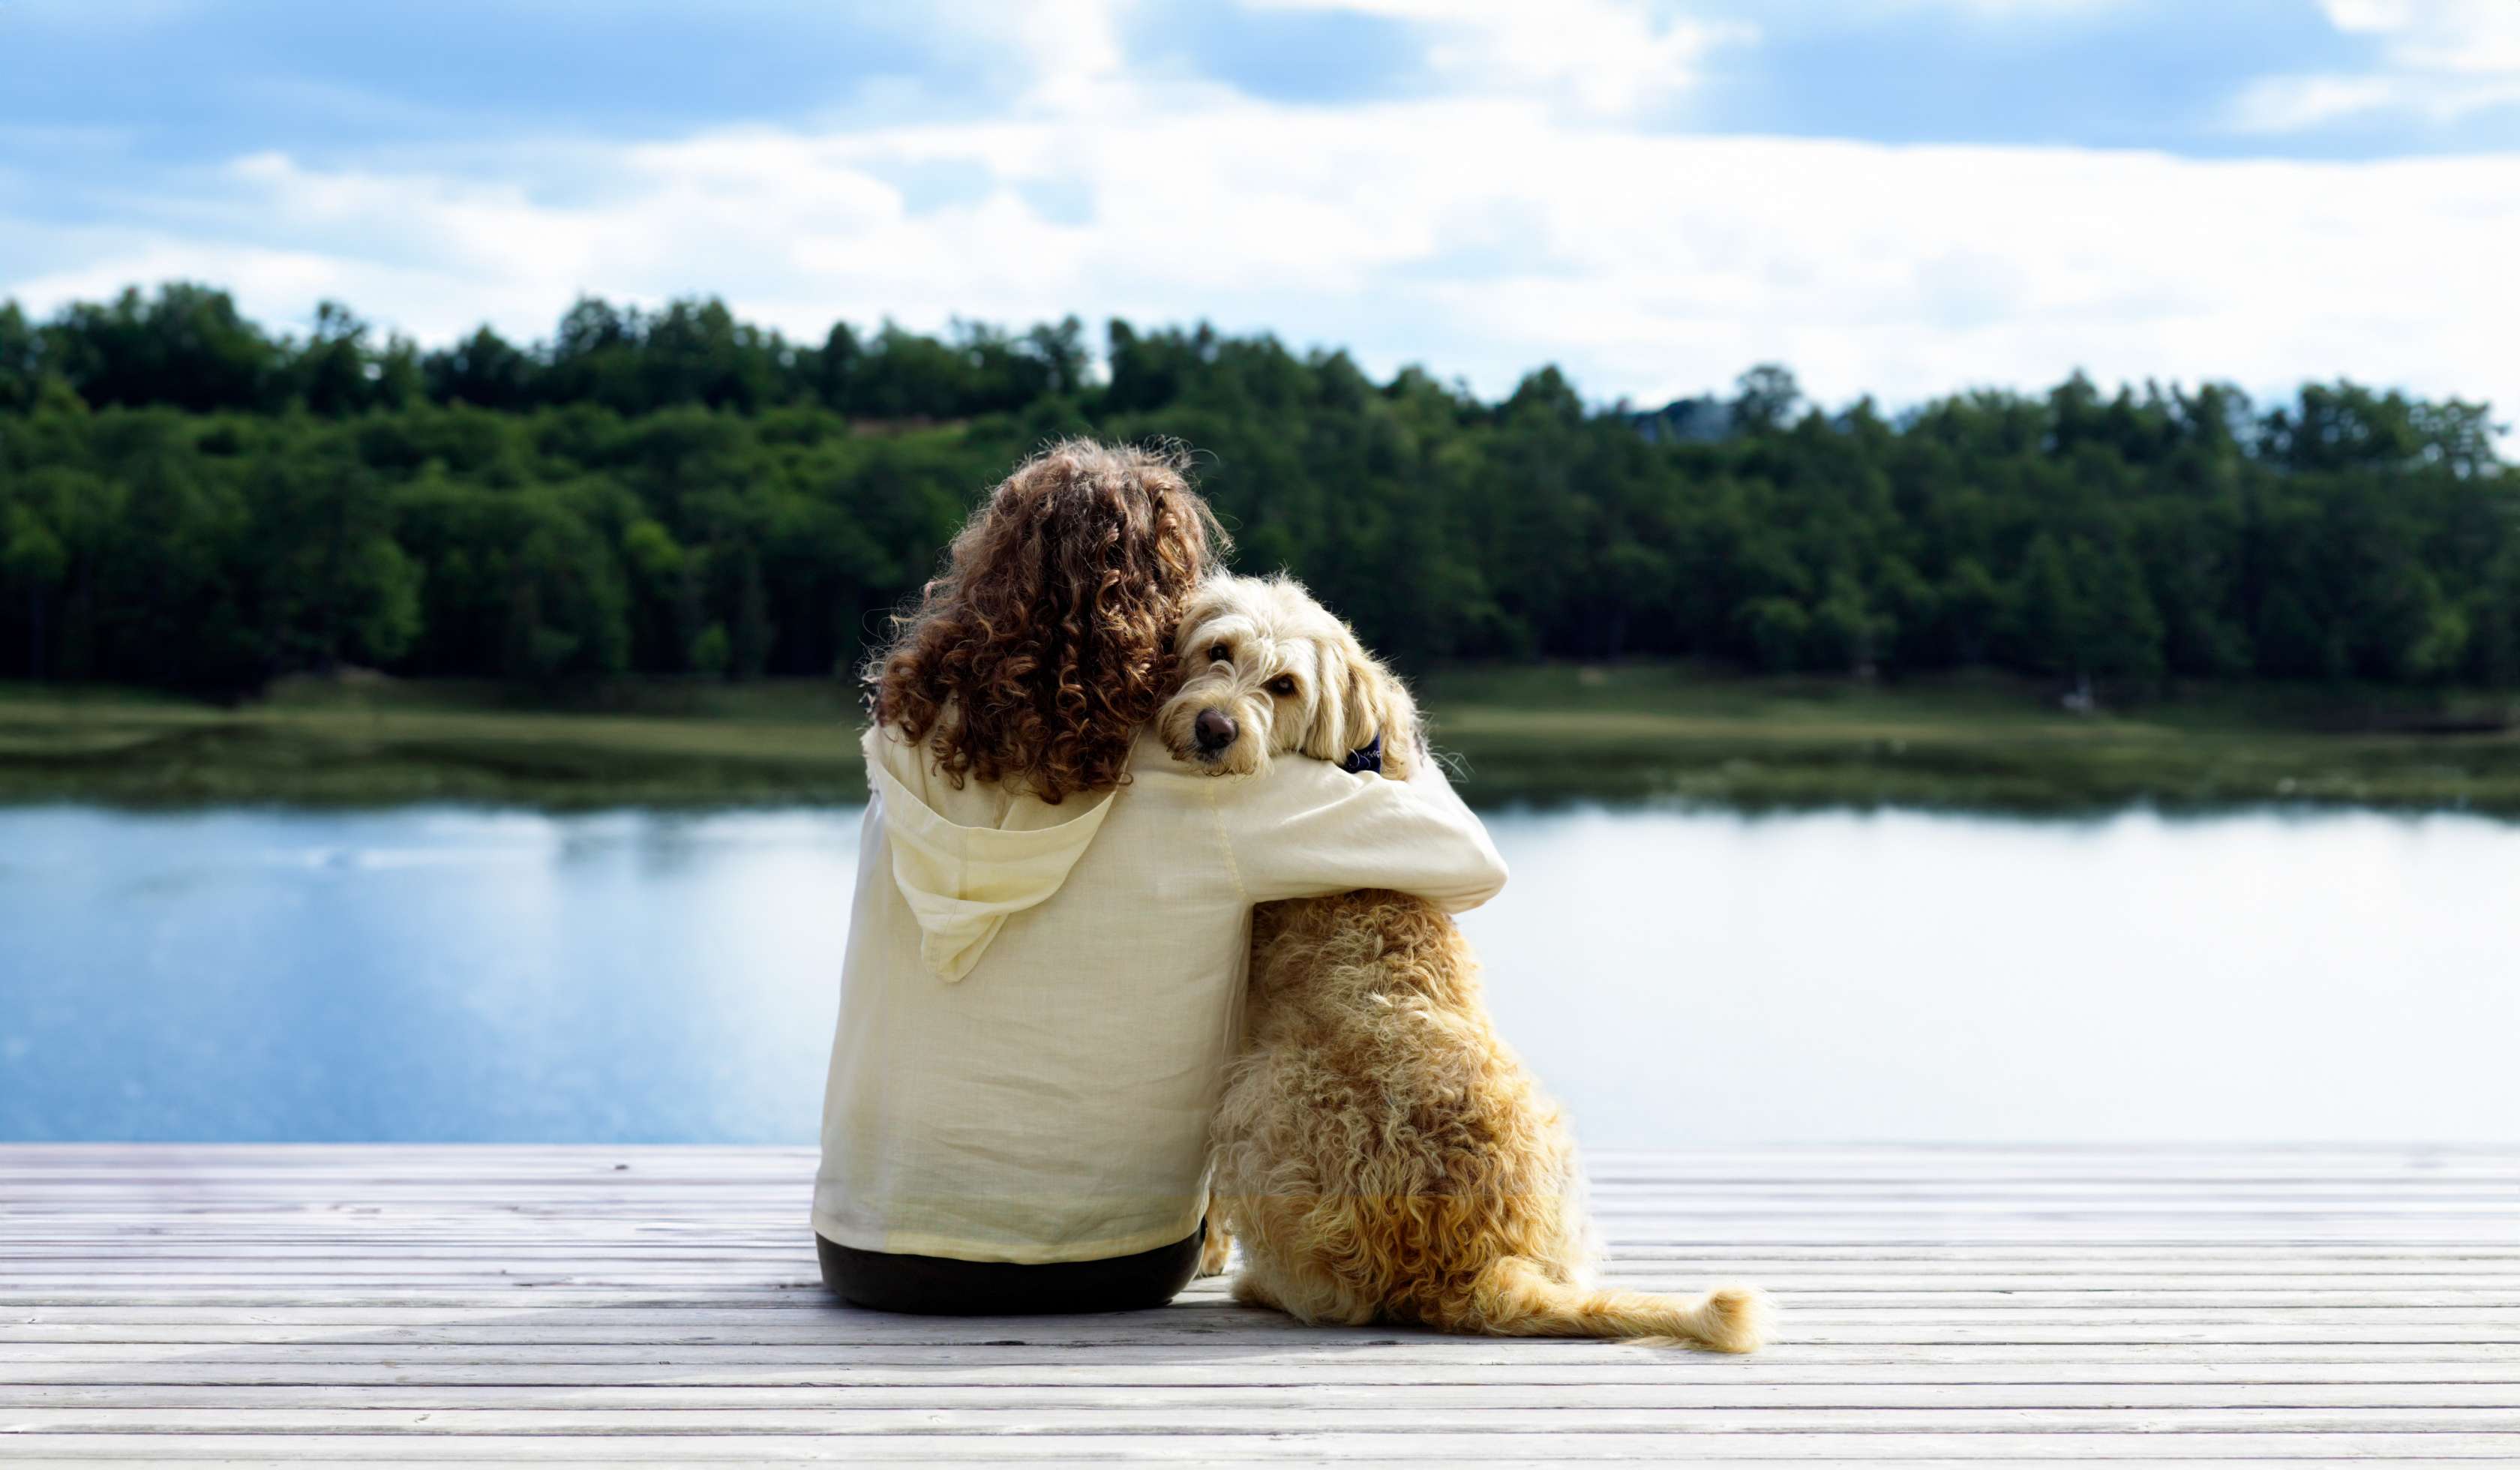 Hundehaftpflichtversicherung: Eine Frau sitzt mit einem Hund auf einem Steg am See